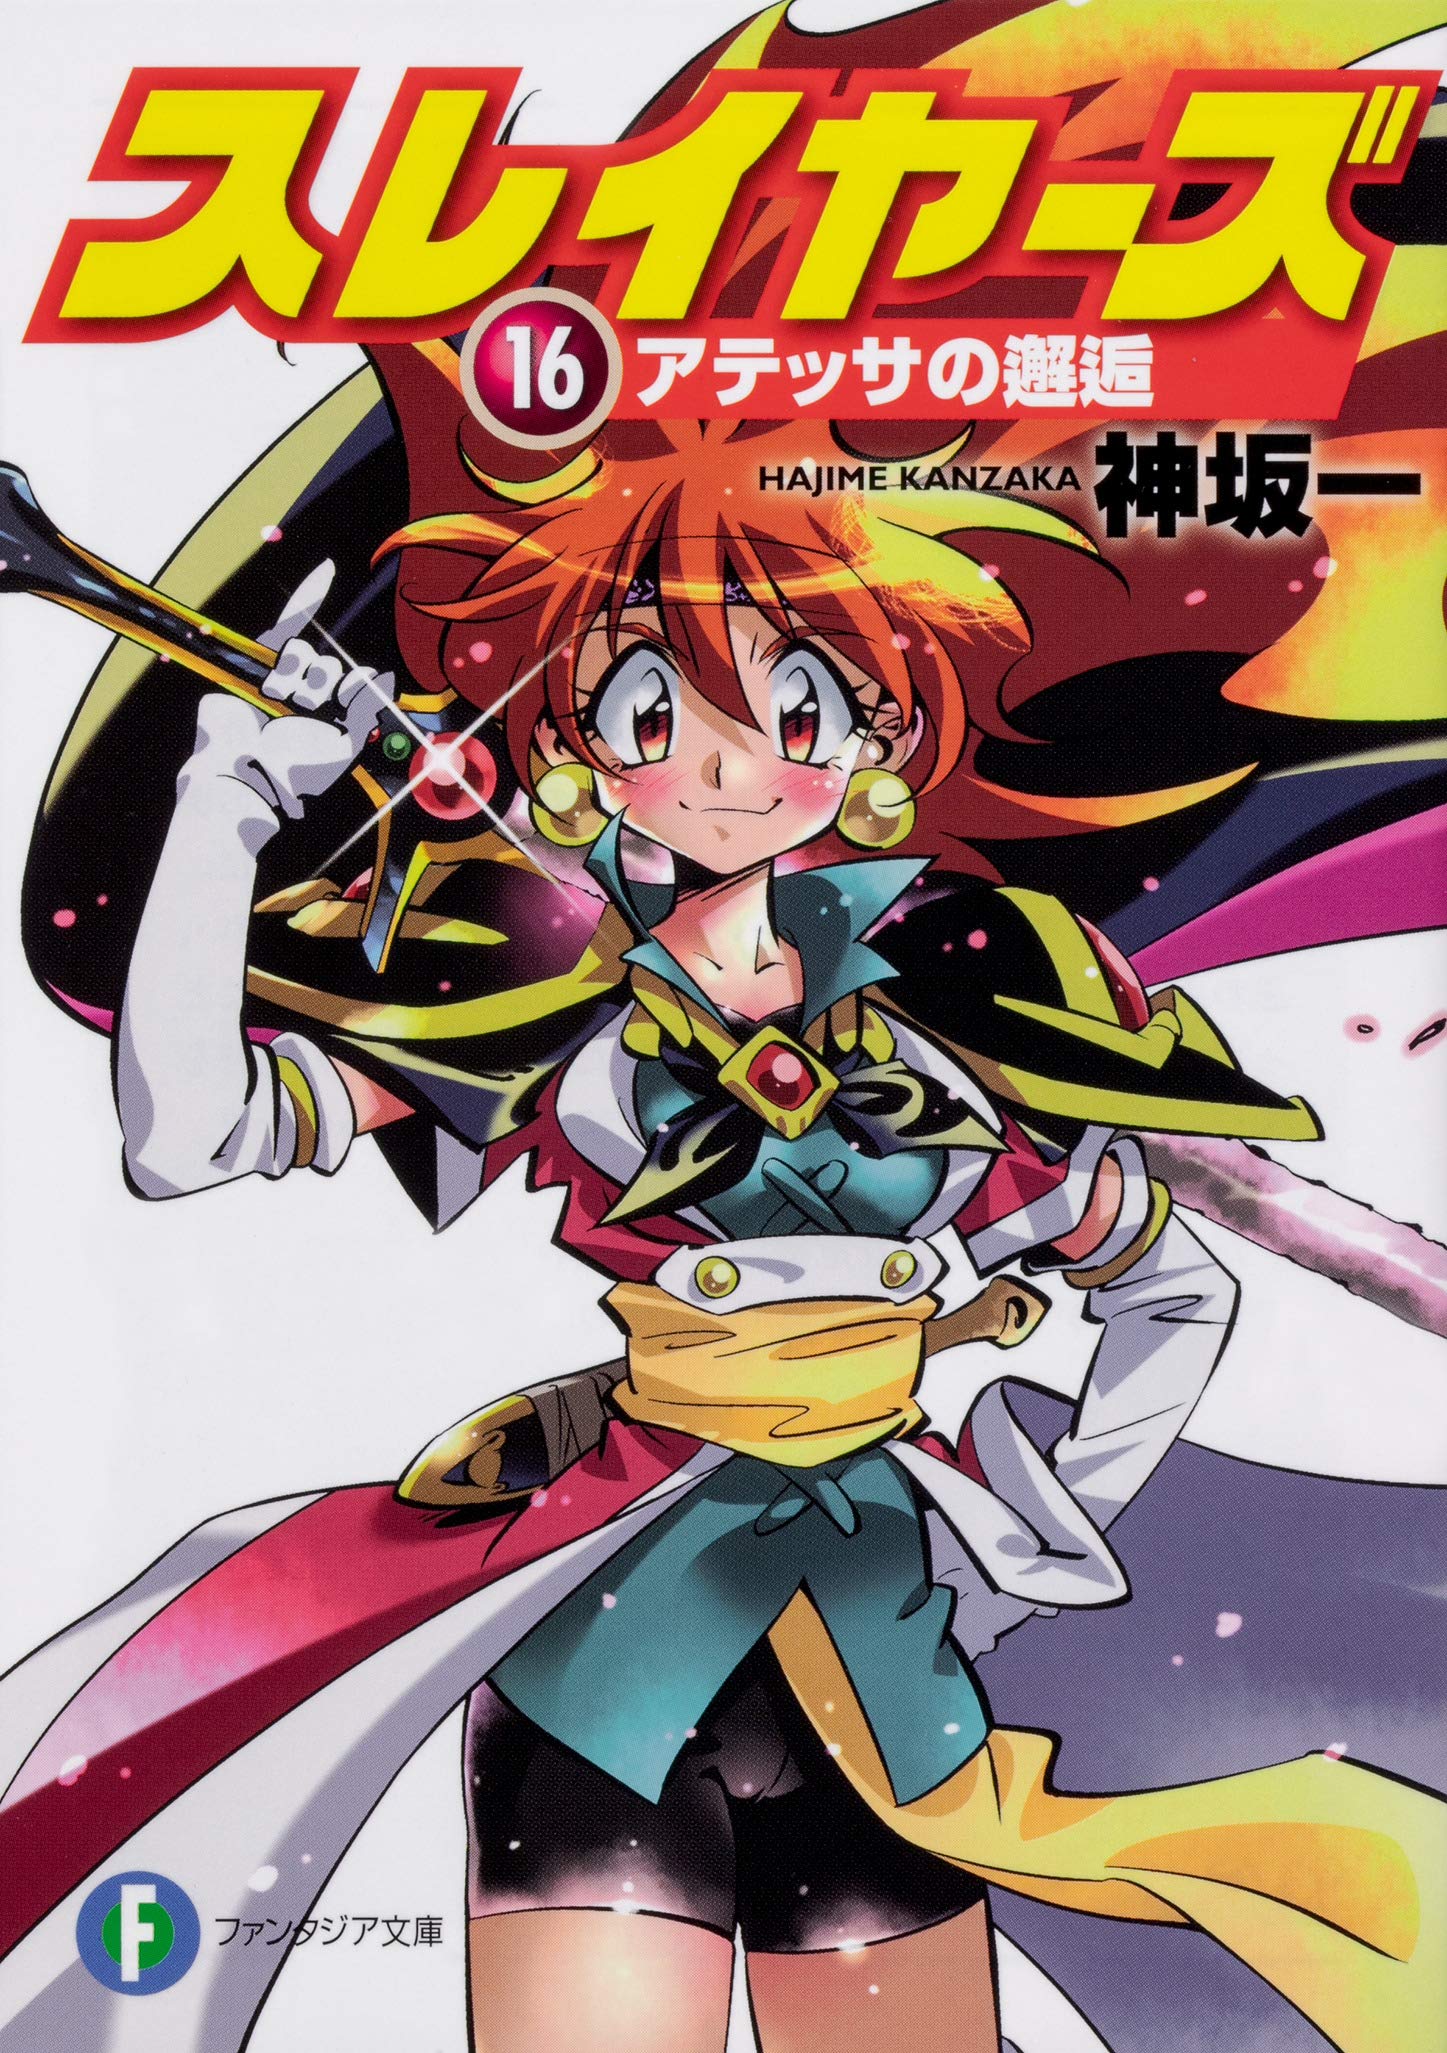 IntoxiAnime - Página 78 de 964 - Tudo sobre animes, tops, light novels,  mangas, notícias, rankings e vendas.